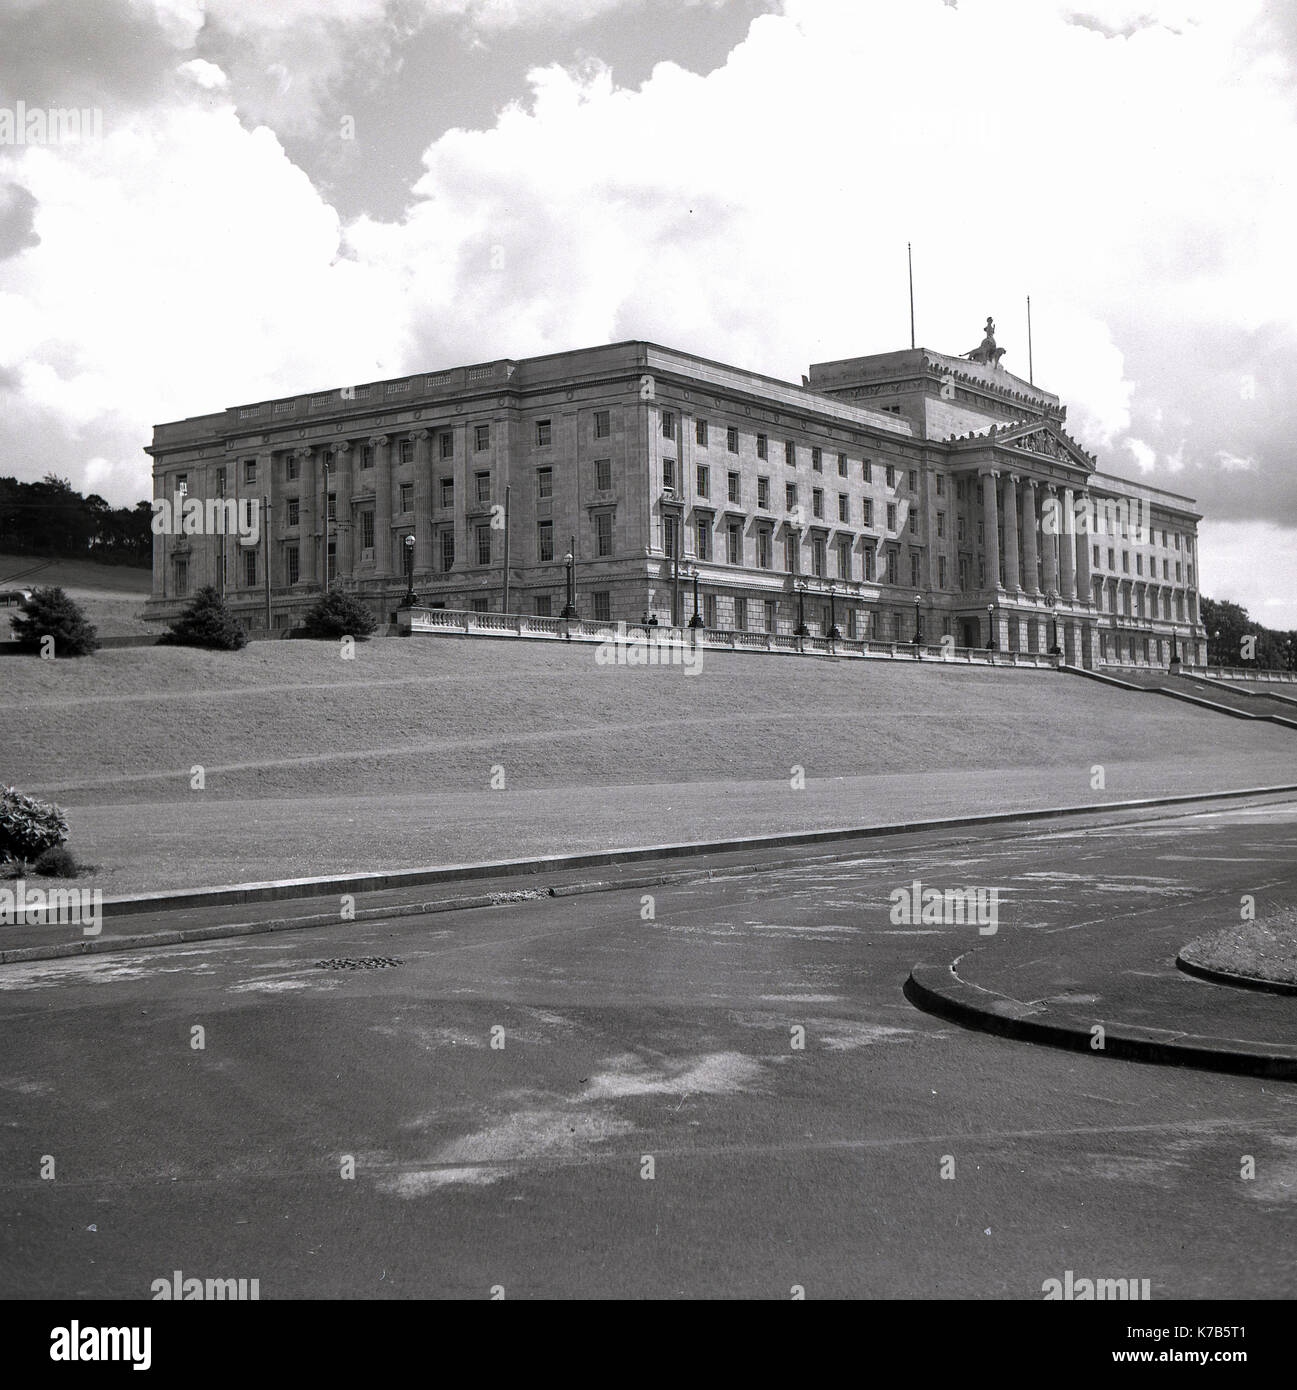 Années 1950, vue historique et extérieure du Parlement et du parc environnant à Stormont, Belfast, Irlande du Nord. Le domaine de Stormont a été acheté en 1921 à la suite de la partition de l'Irlande et le grand bâtiment vu ici, créé dans le style classique grec et fabriqué à partir de Portland Stone, a été officiellement ouvert en 1932. Depuis 1998, c'est le lieu d'administration du gouvernement décentralisé pour le pays, l'Assemblée de l'Irlande du Nord. Banque D'Images